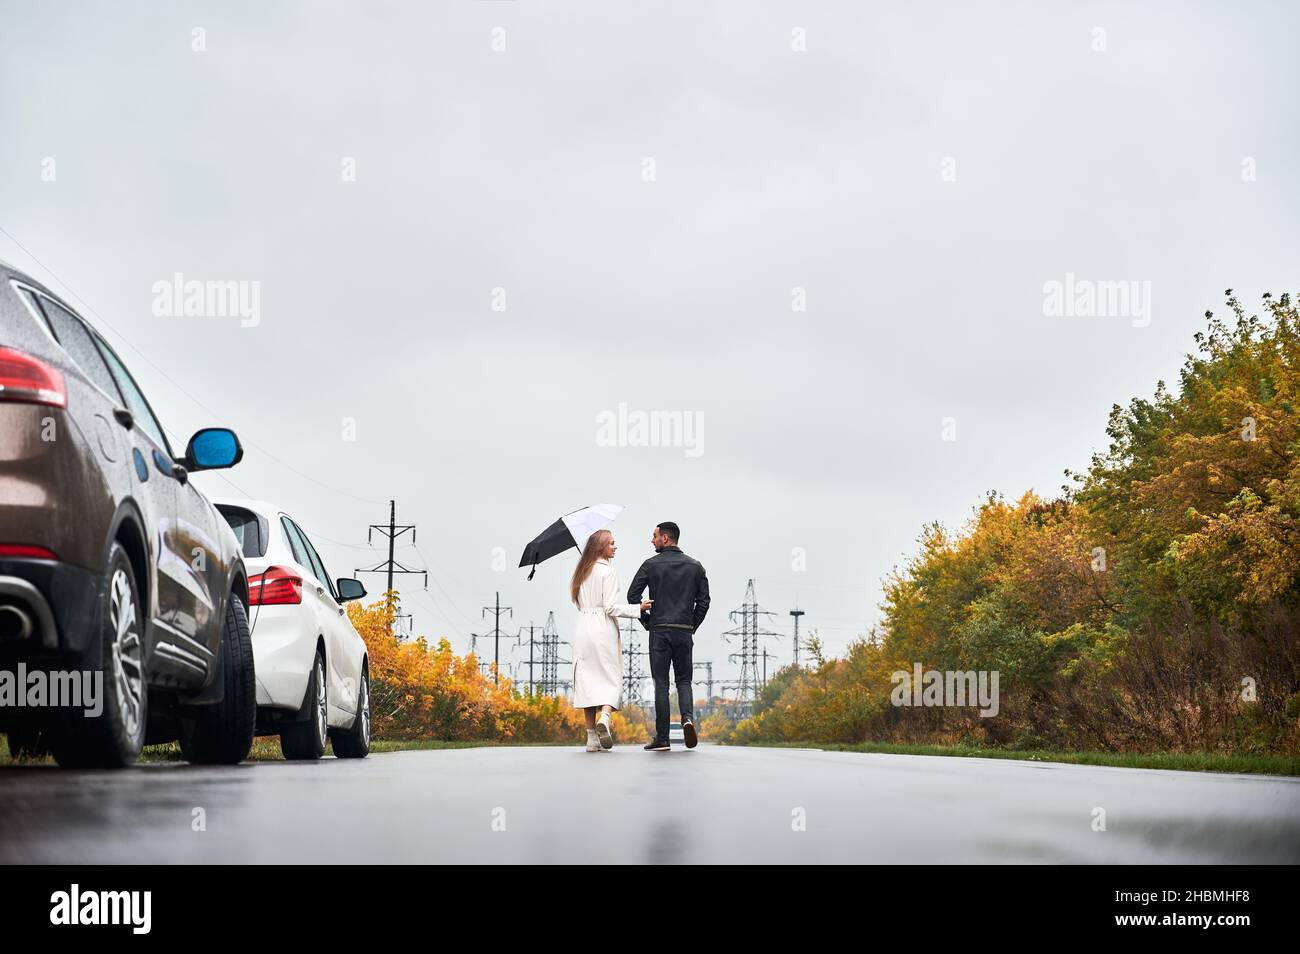 Vue arrière de la dame avec parapluie et son petit ami marchant sur la route à l'automne jour pluvieux.En toile de fond, des tours électriques en hauteur, du ciel gris et des buissons jaunes sur les routes.Deux voitures à droite. Banque D'Images